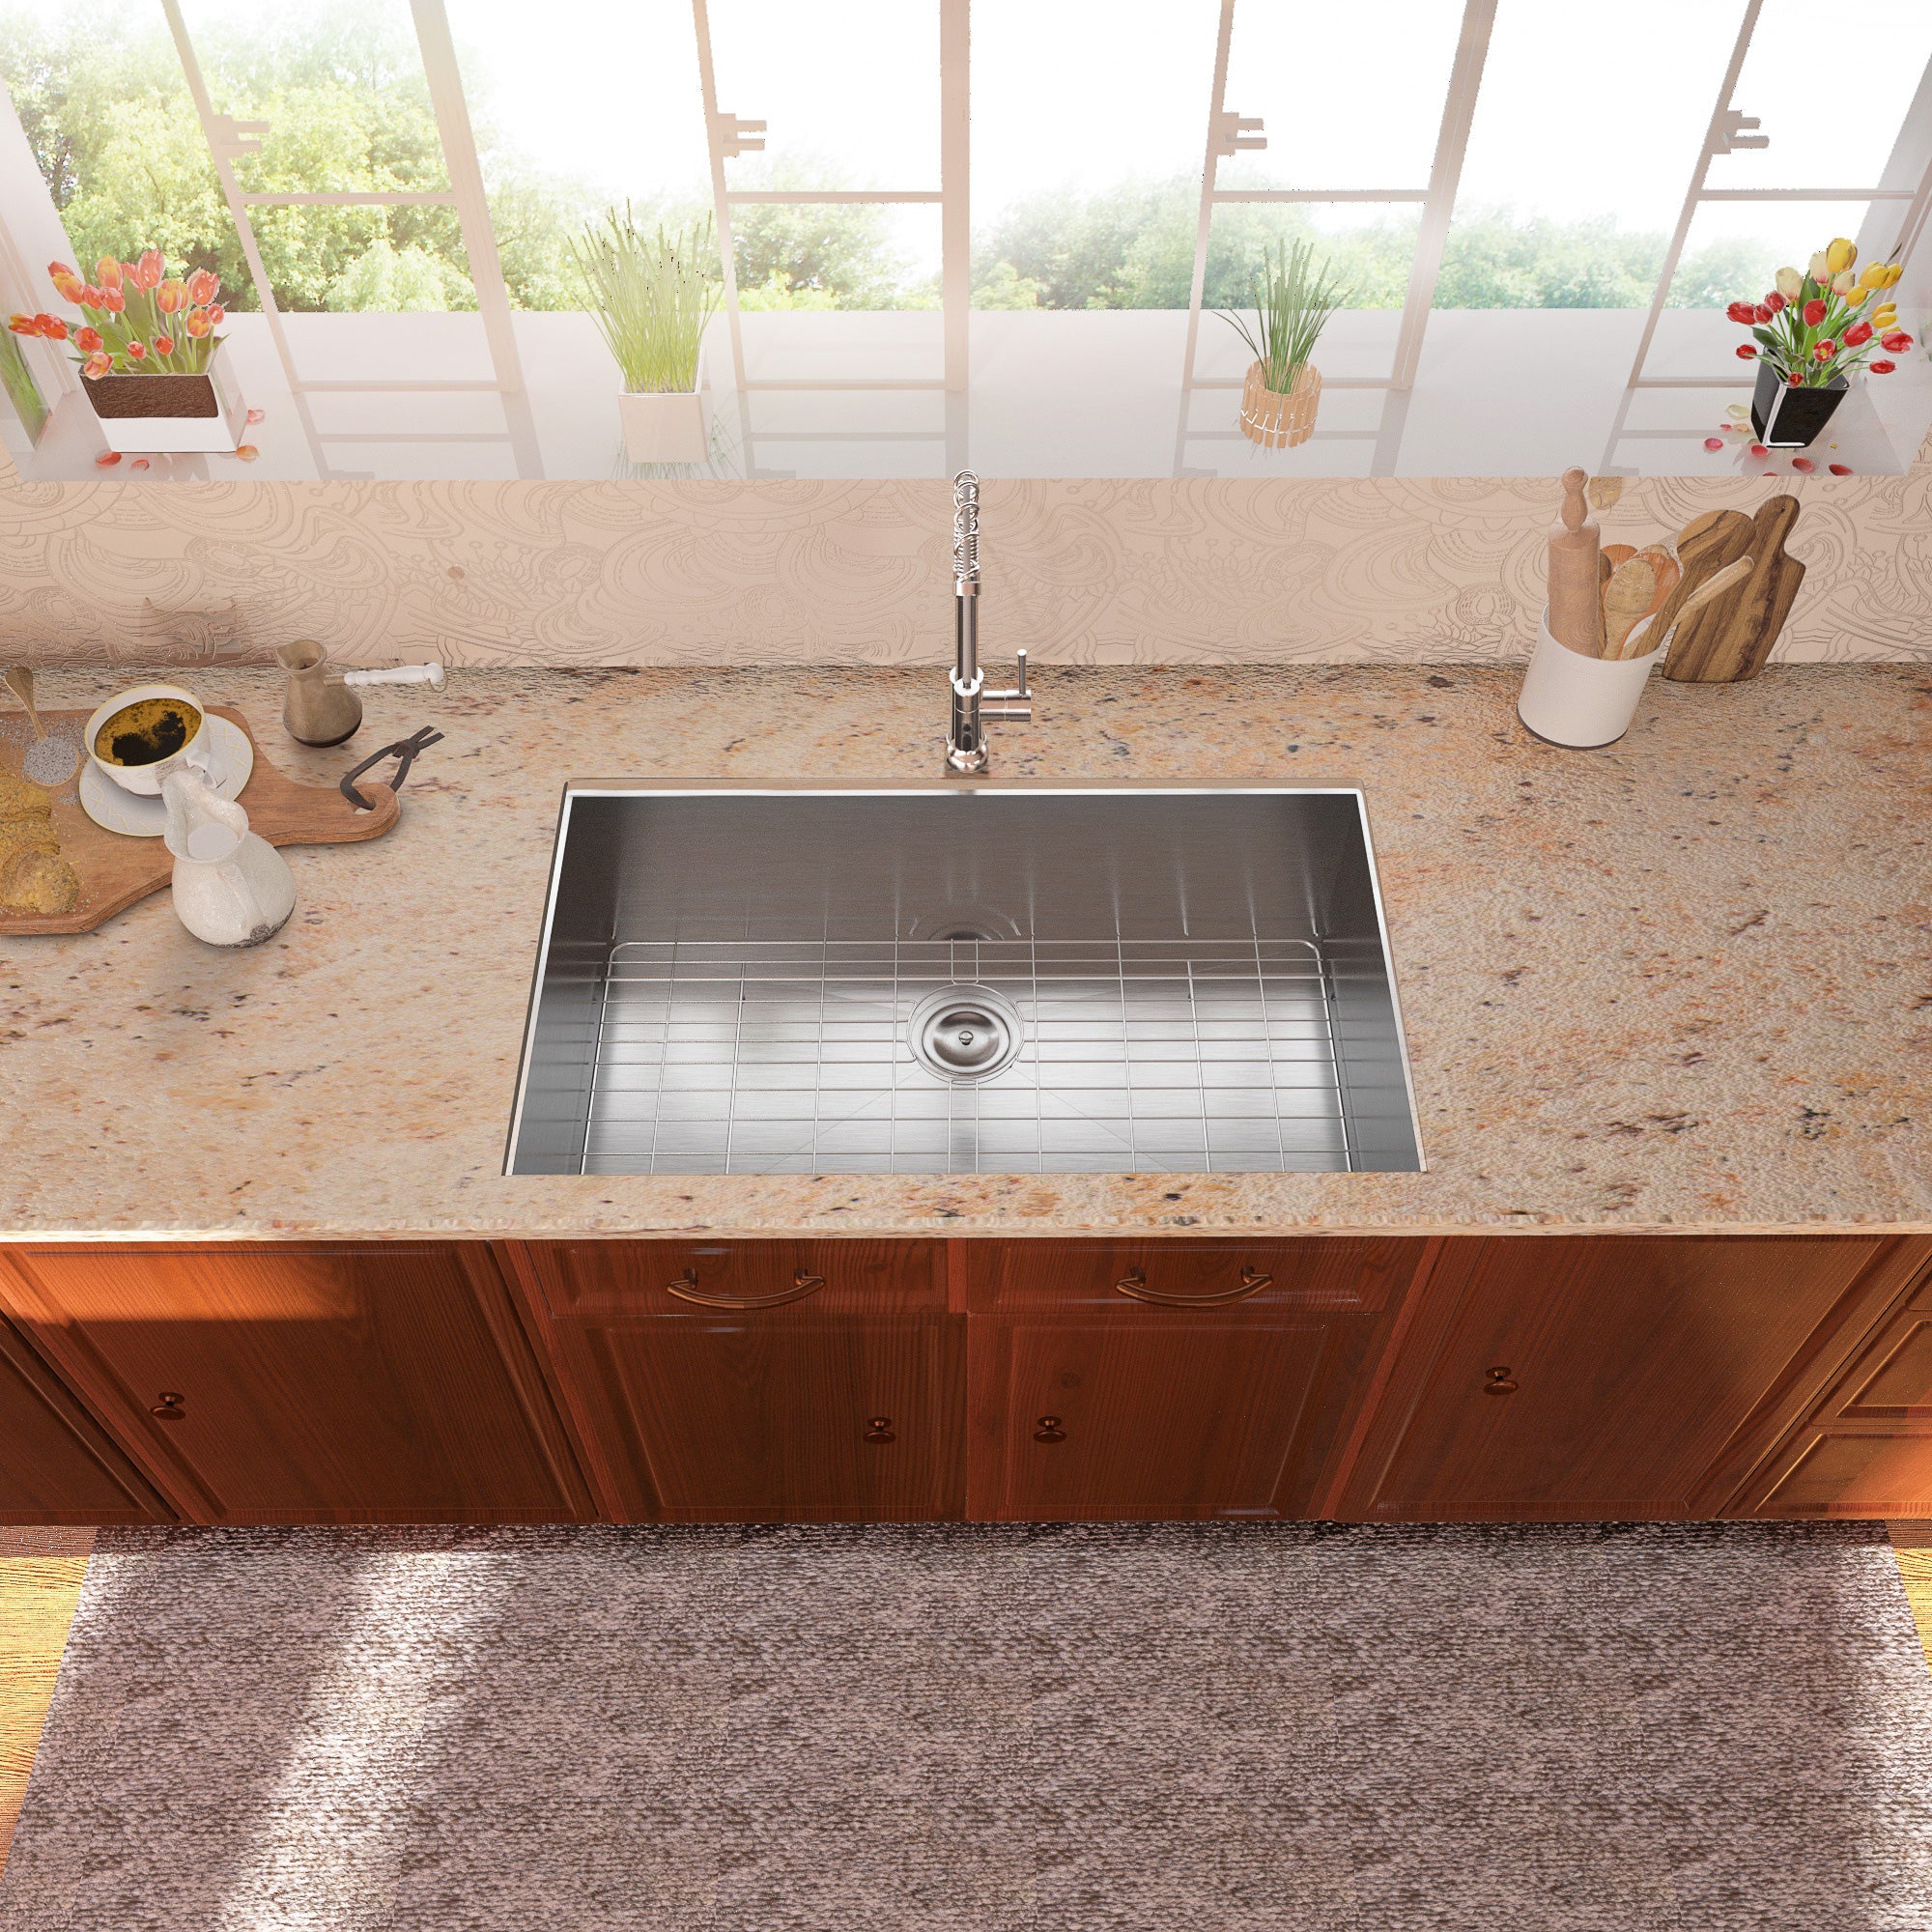 Lordear Undermount Sink 30 Inch - Stainless Steel Single Bowl Kitchen Sink | Lordear